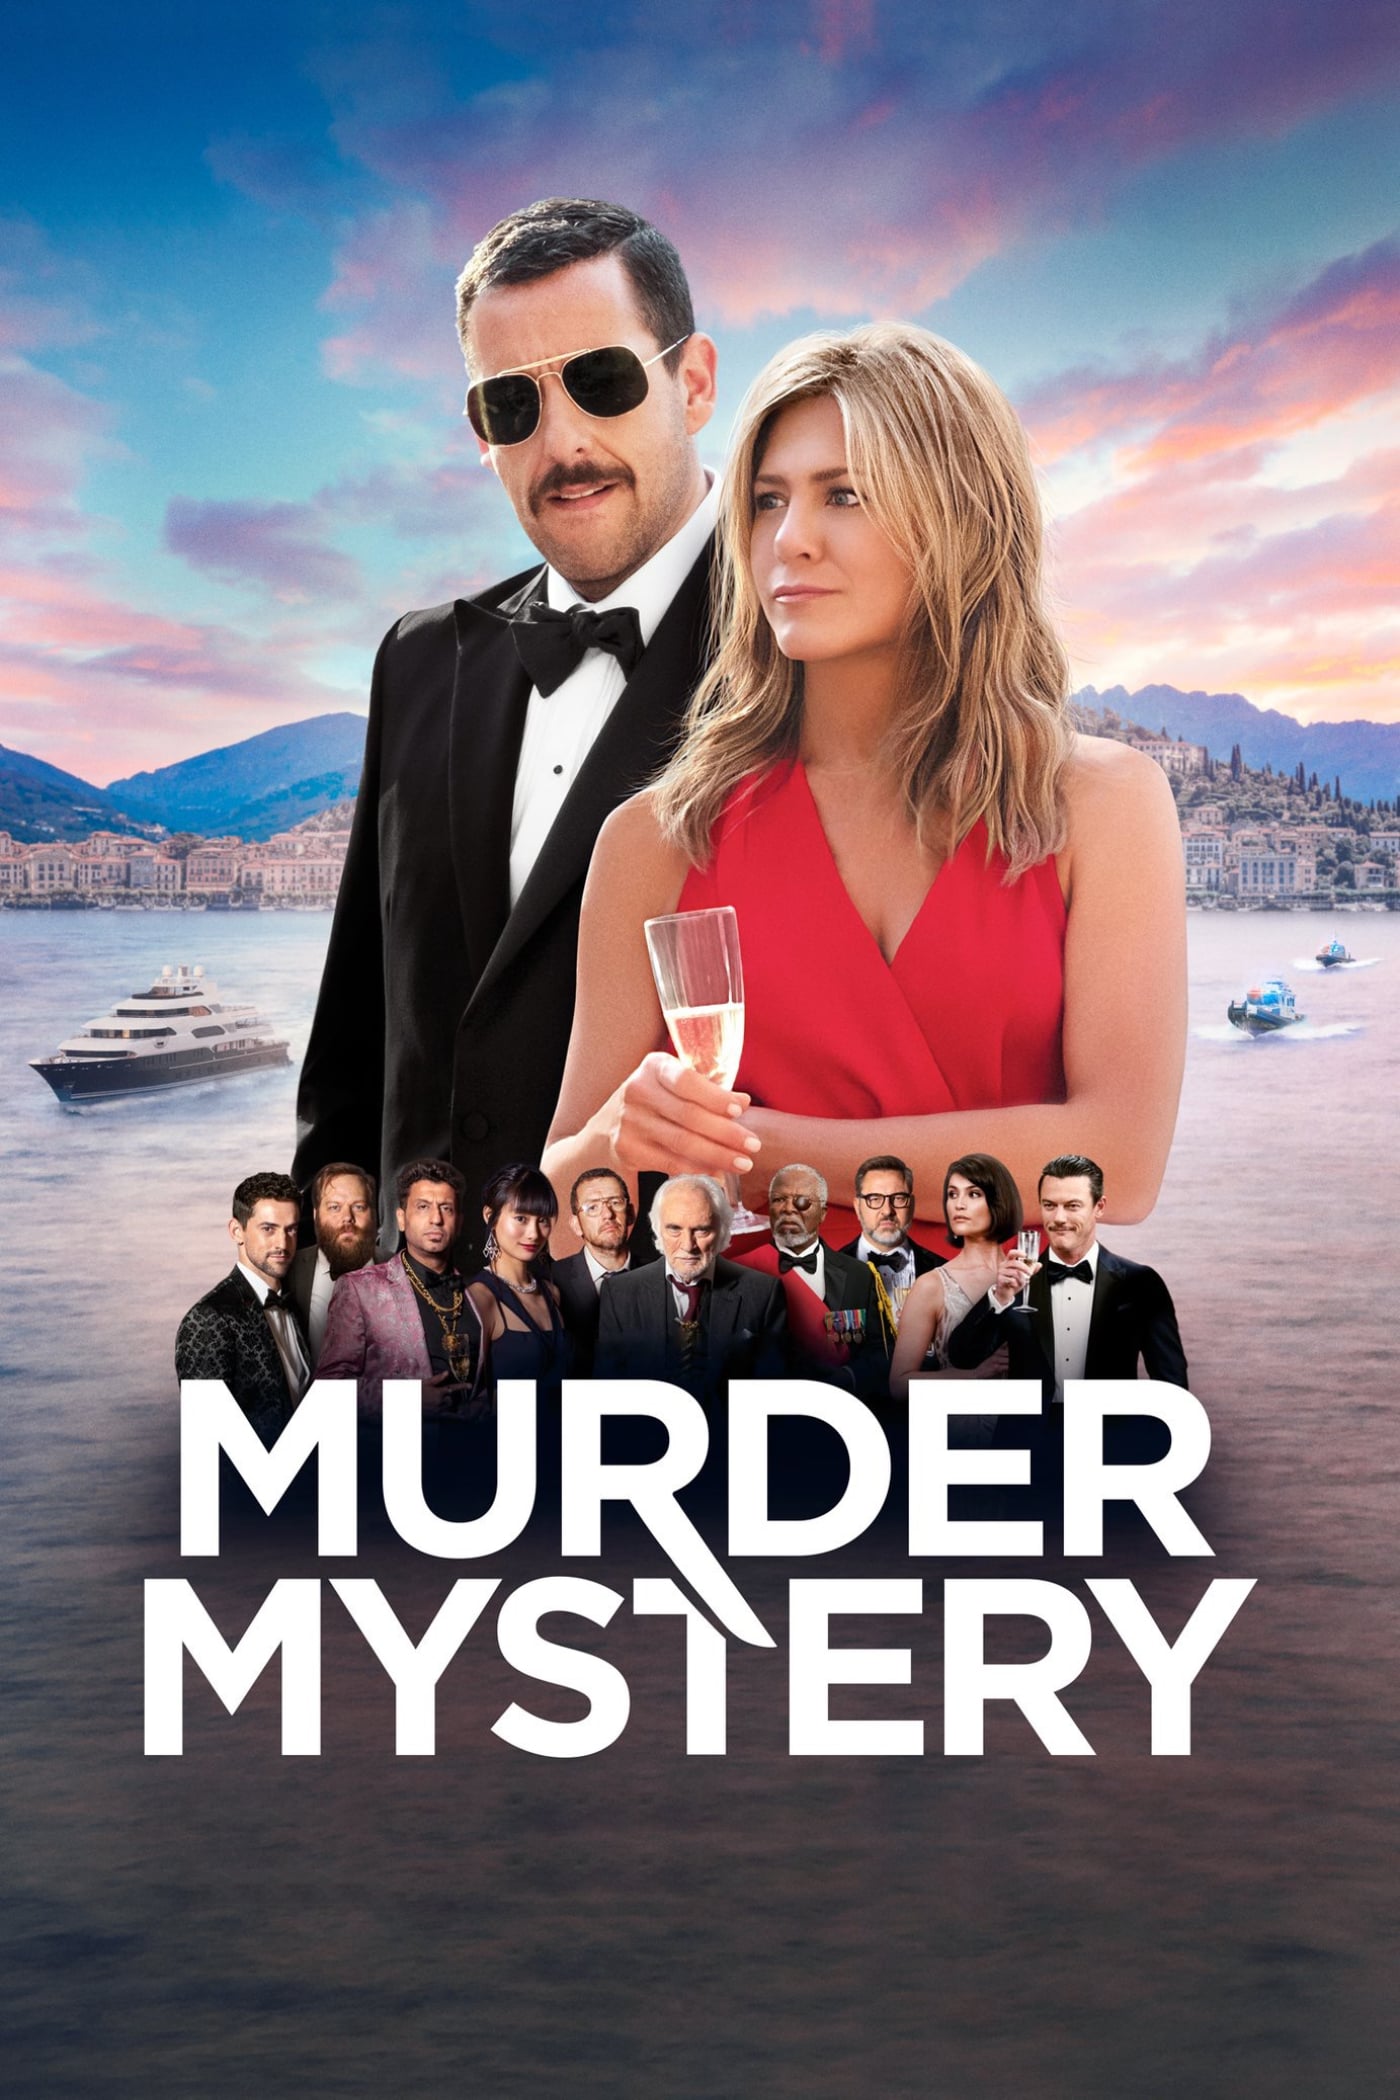 Affiche du film "Murder Mystery"